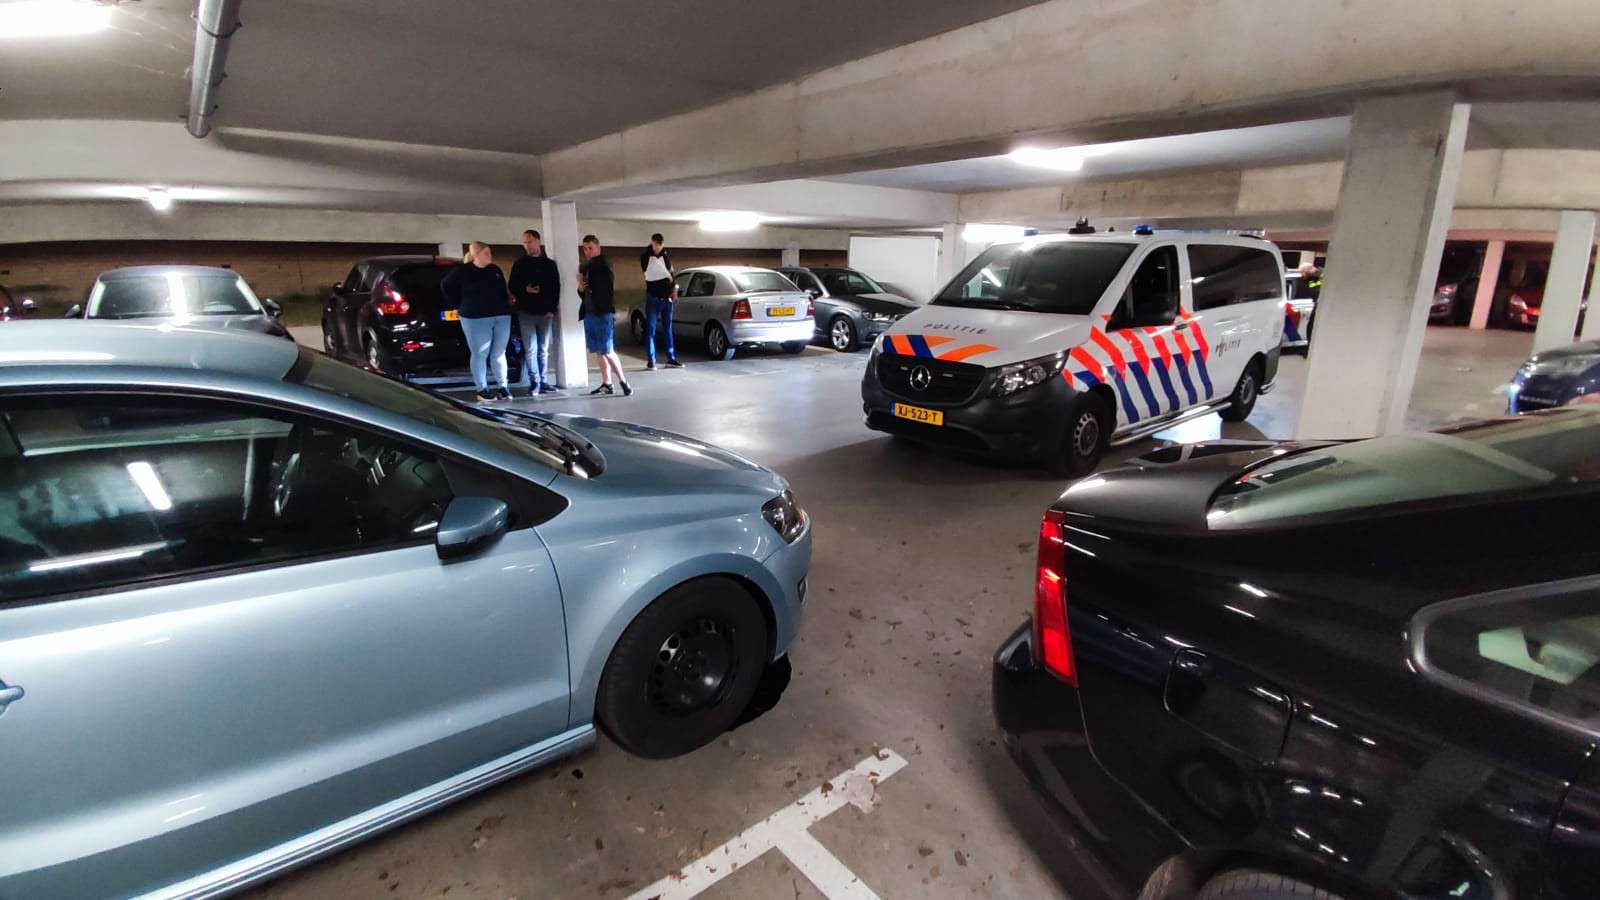 De gestolen Polo in Dordrecht werd klemgereden in een parkeergarage, de bestuurder wist te ontkomen.